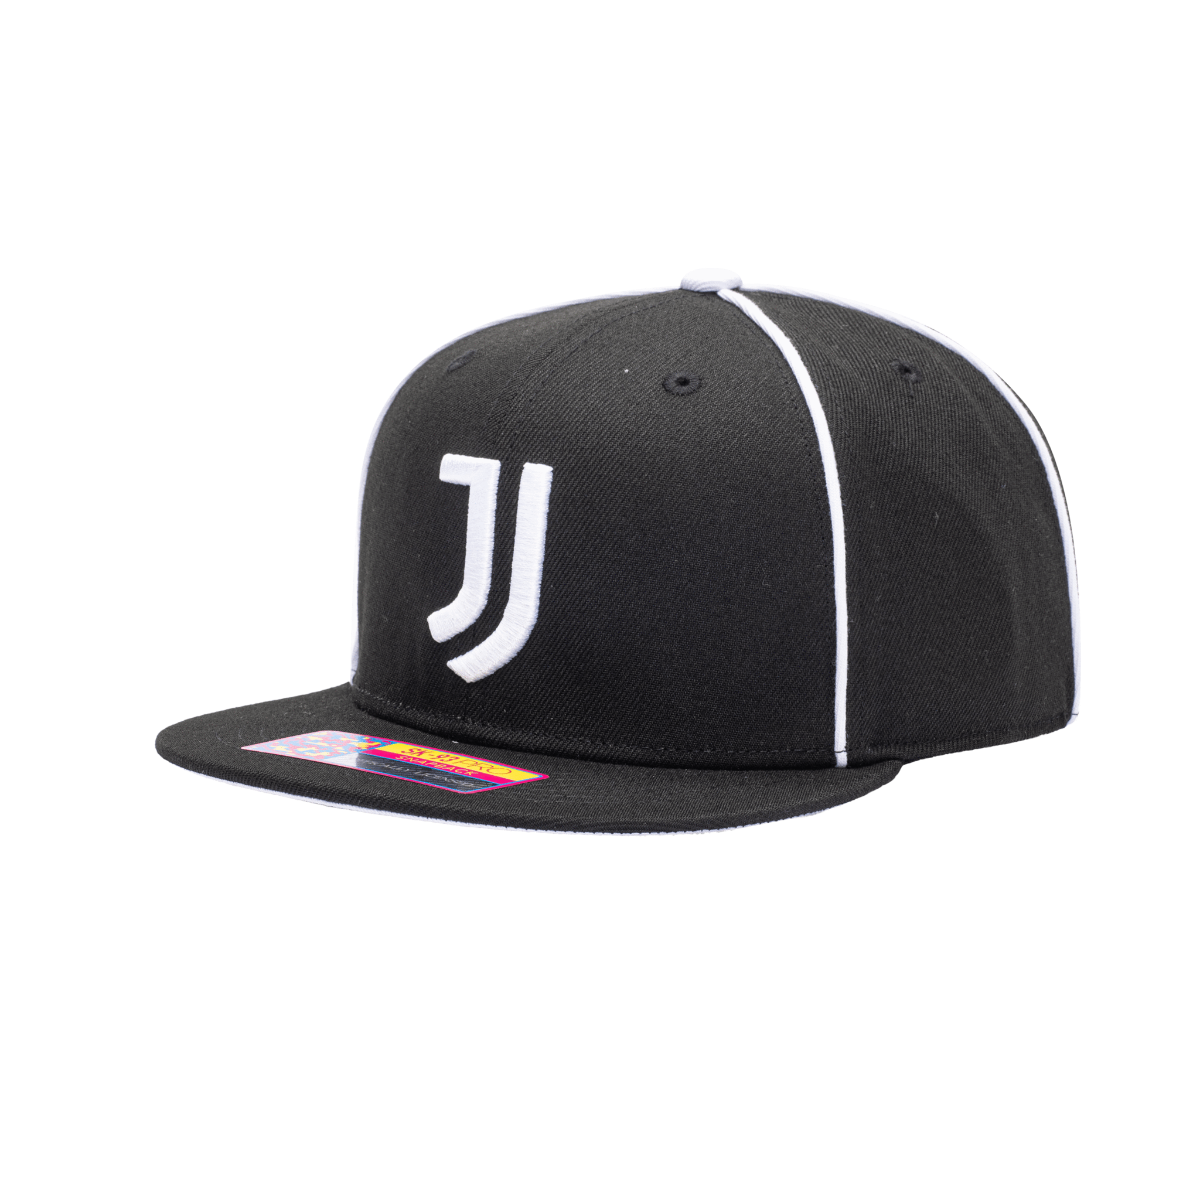 FI Collection Juventus Cali Night Snapback Hat - Black-White